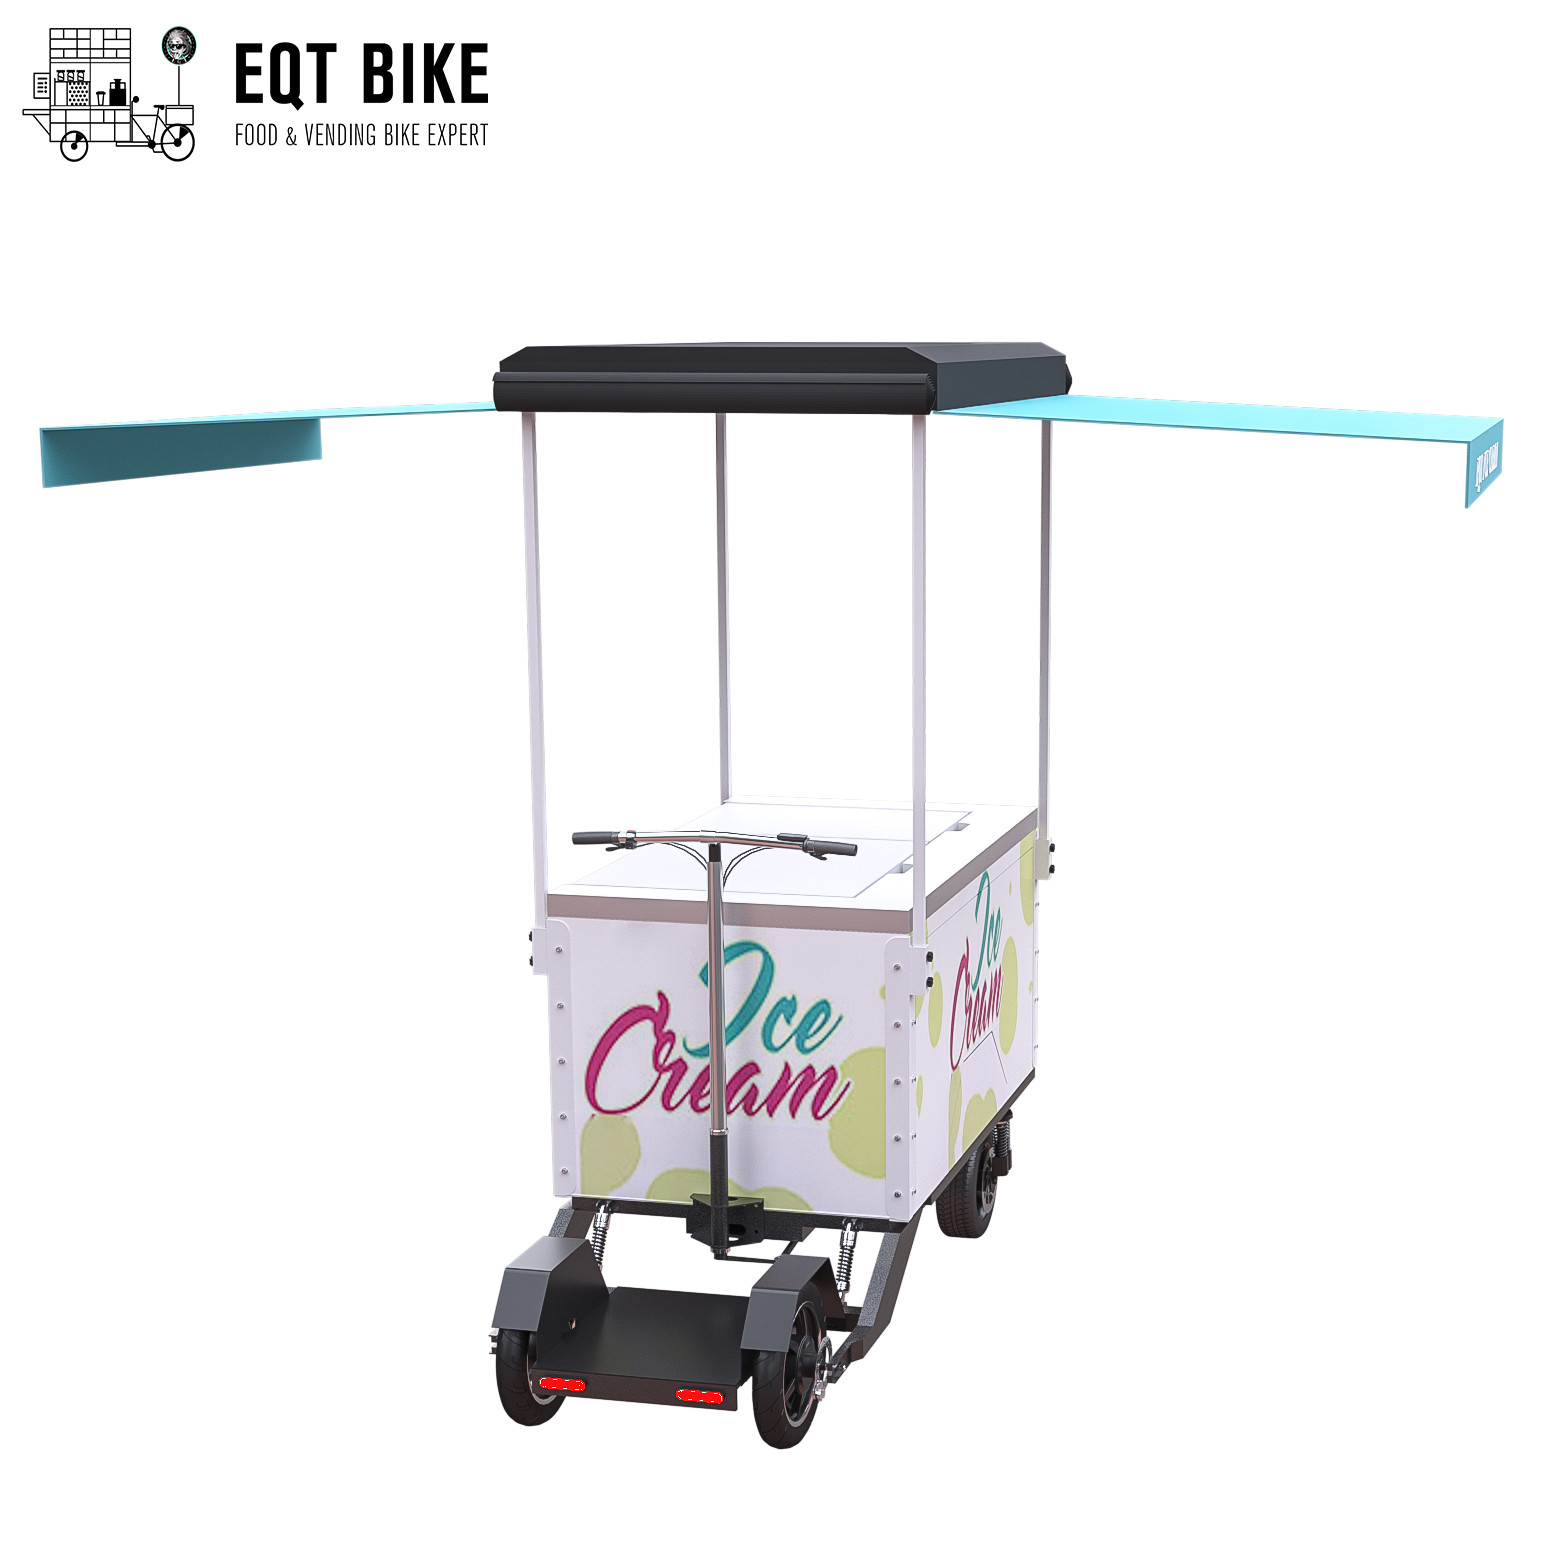 EQT 138 литров мягко мороженого велосипед для продажи мороженое торгового автомата велосипеда замораживателя груза летнего отпуска тележки замораживателя электрическое